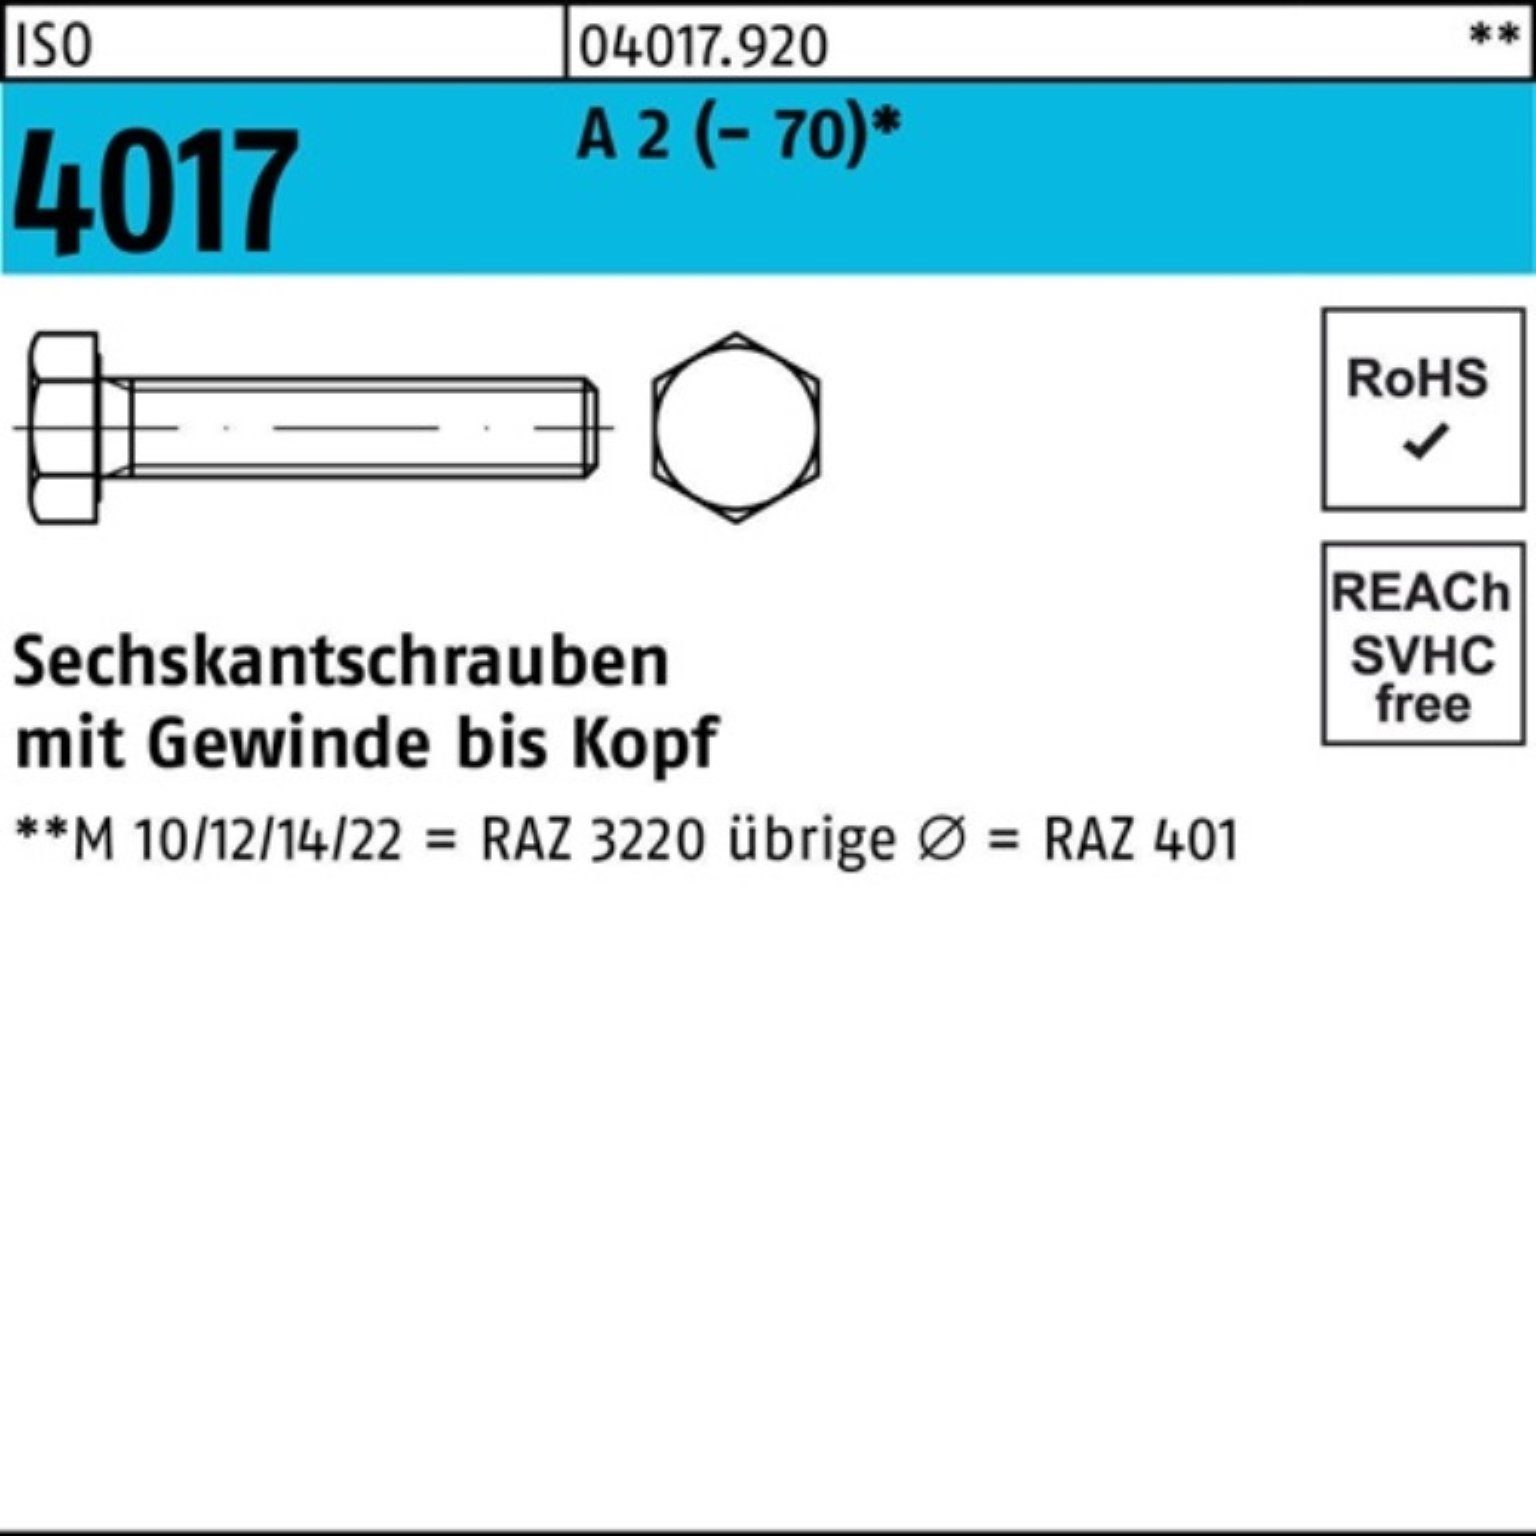 Bufab Sechskantschraube 100er Pack Sechskantschraube ISO 4017 VG M8x 90 A 2 (70) 50 Stück I